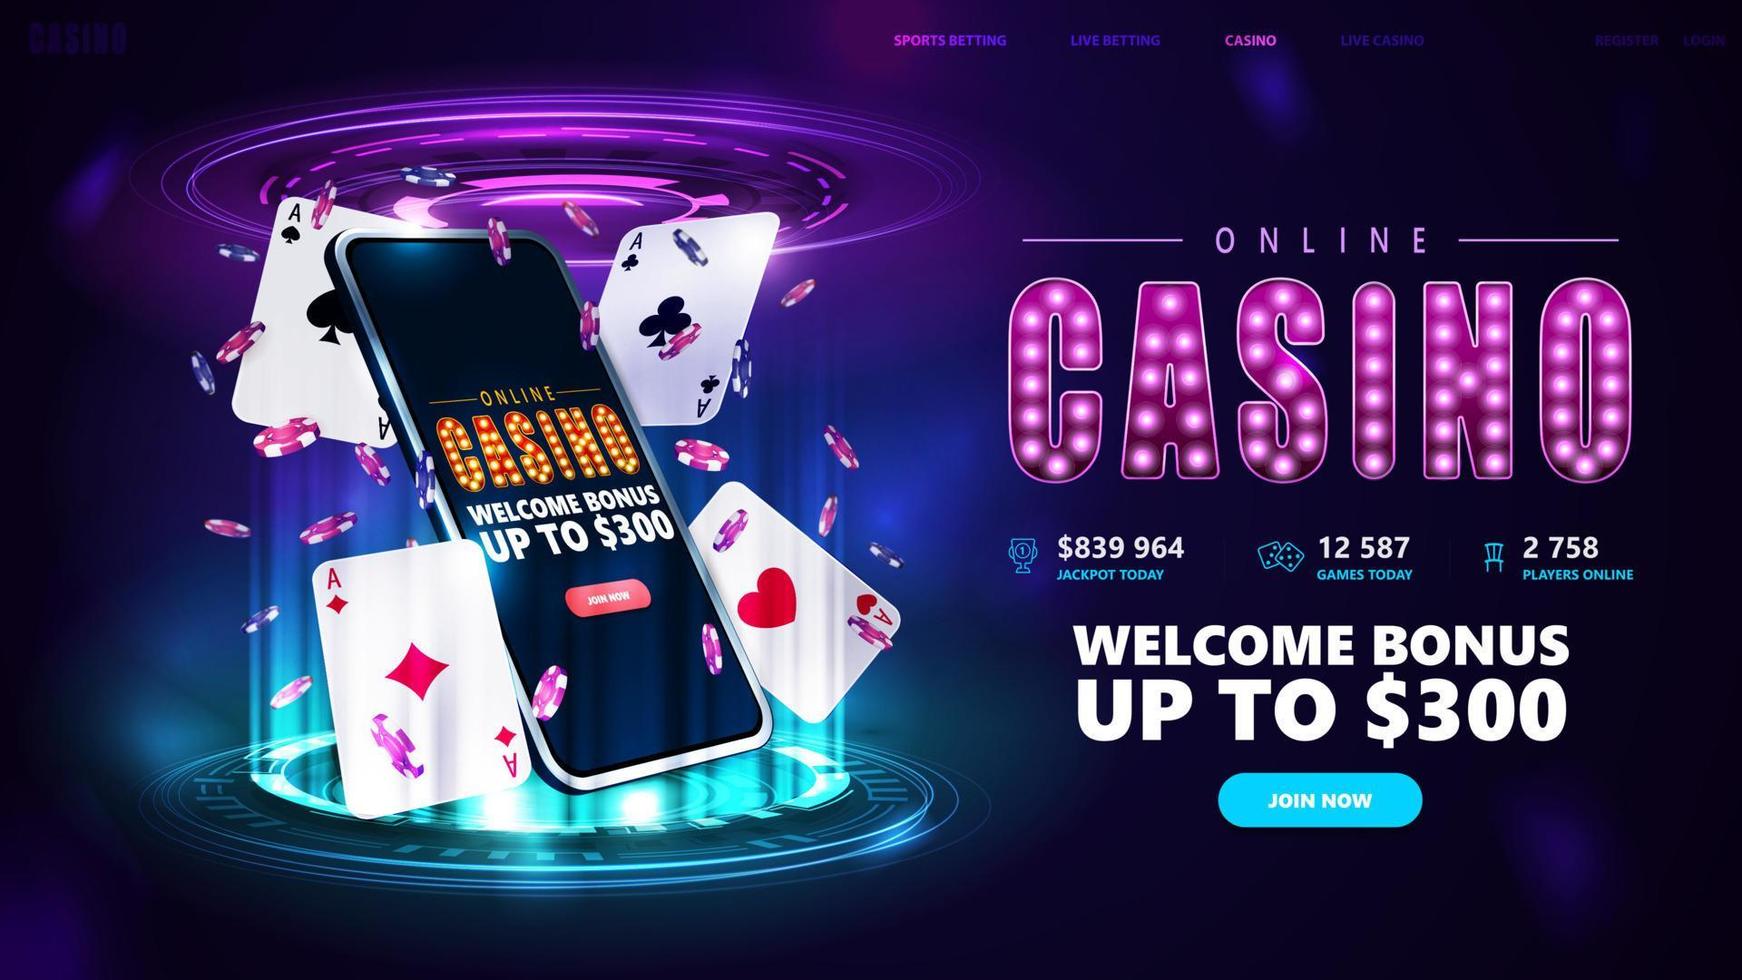 online casino, banner voor website met knop, smartphone, pokerfiches en speelkaarten op blauw en roze digitaal podium met hologram digitale ringen in donkere kamer vector